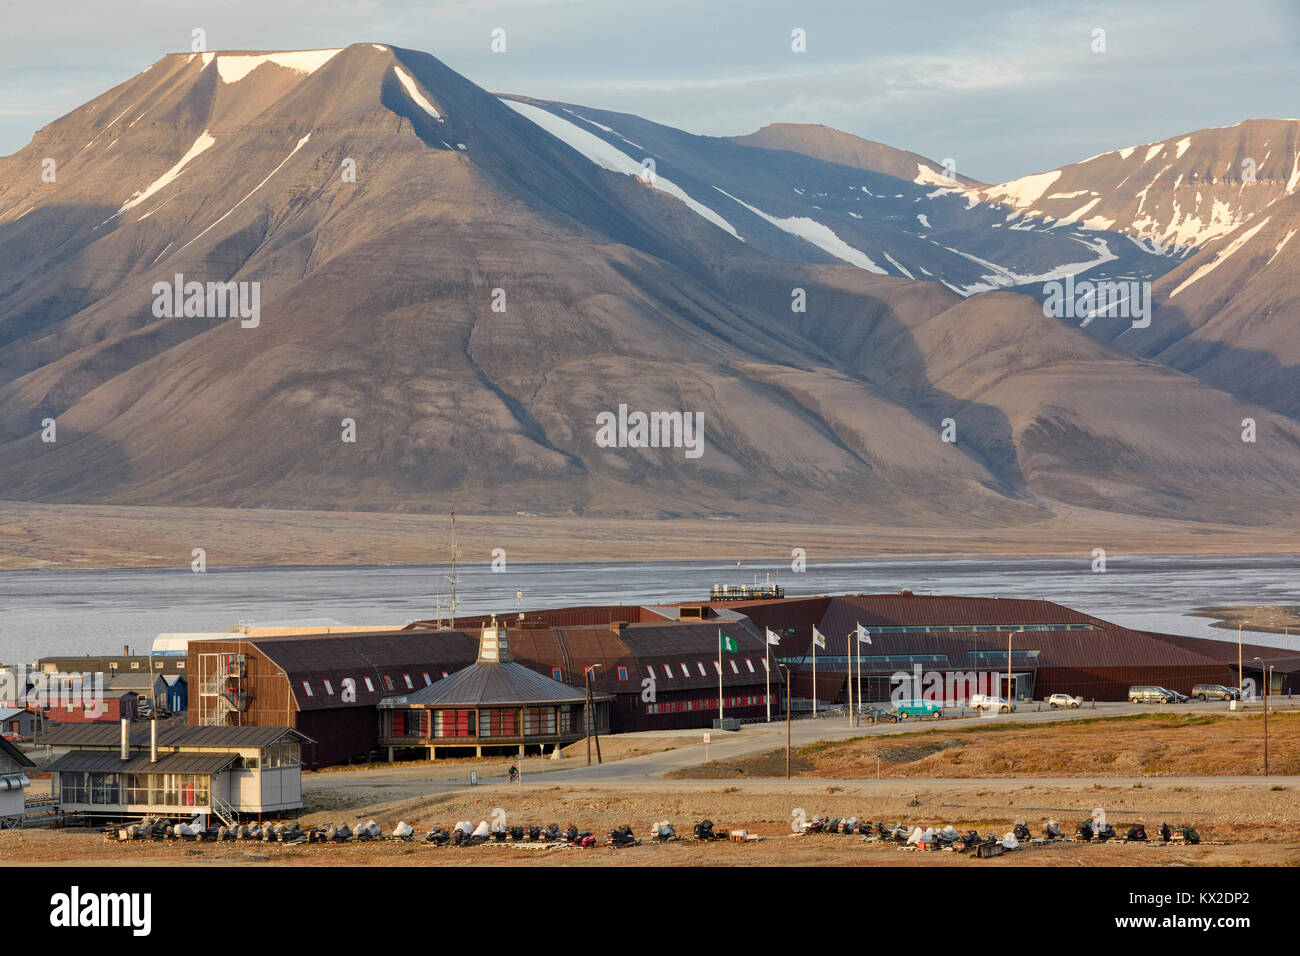 Le service d'information du Centre universitaire, Longyearbyen, Svalbard, Norvège Banque D'Images